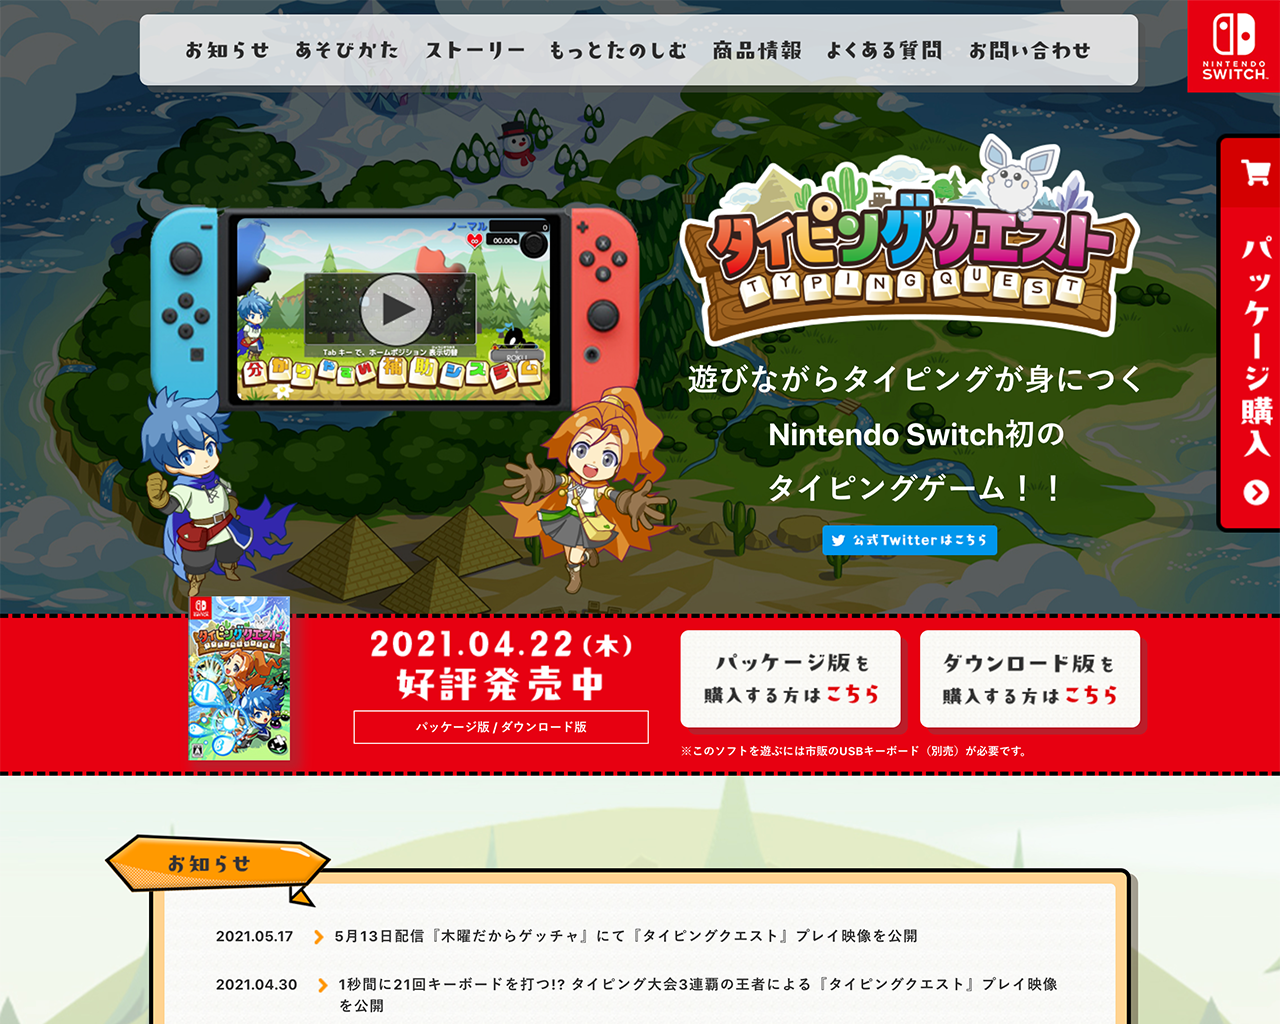 Nintendo Switch用ゲーム「タイピングクエスト」ビジュアル制作